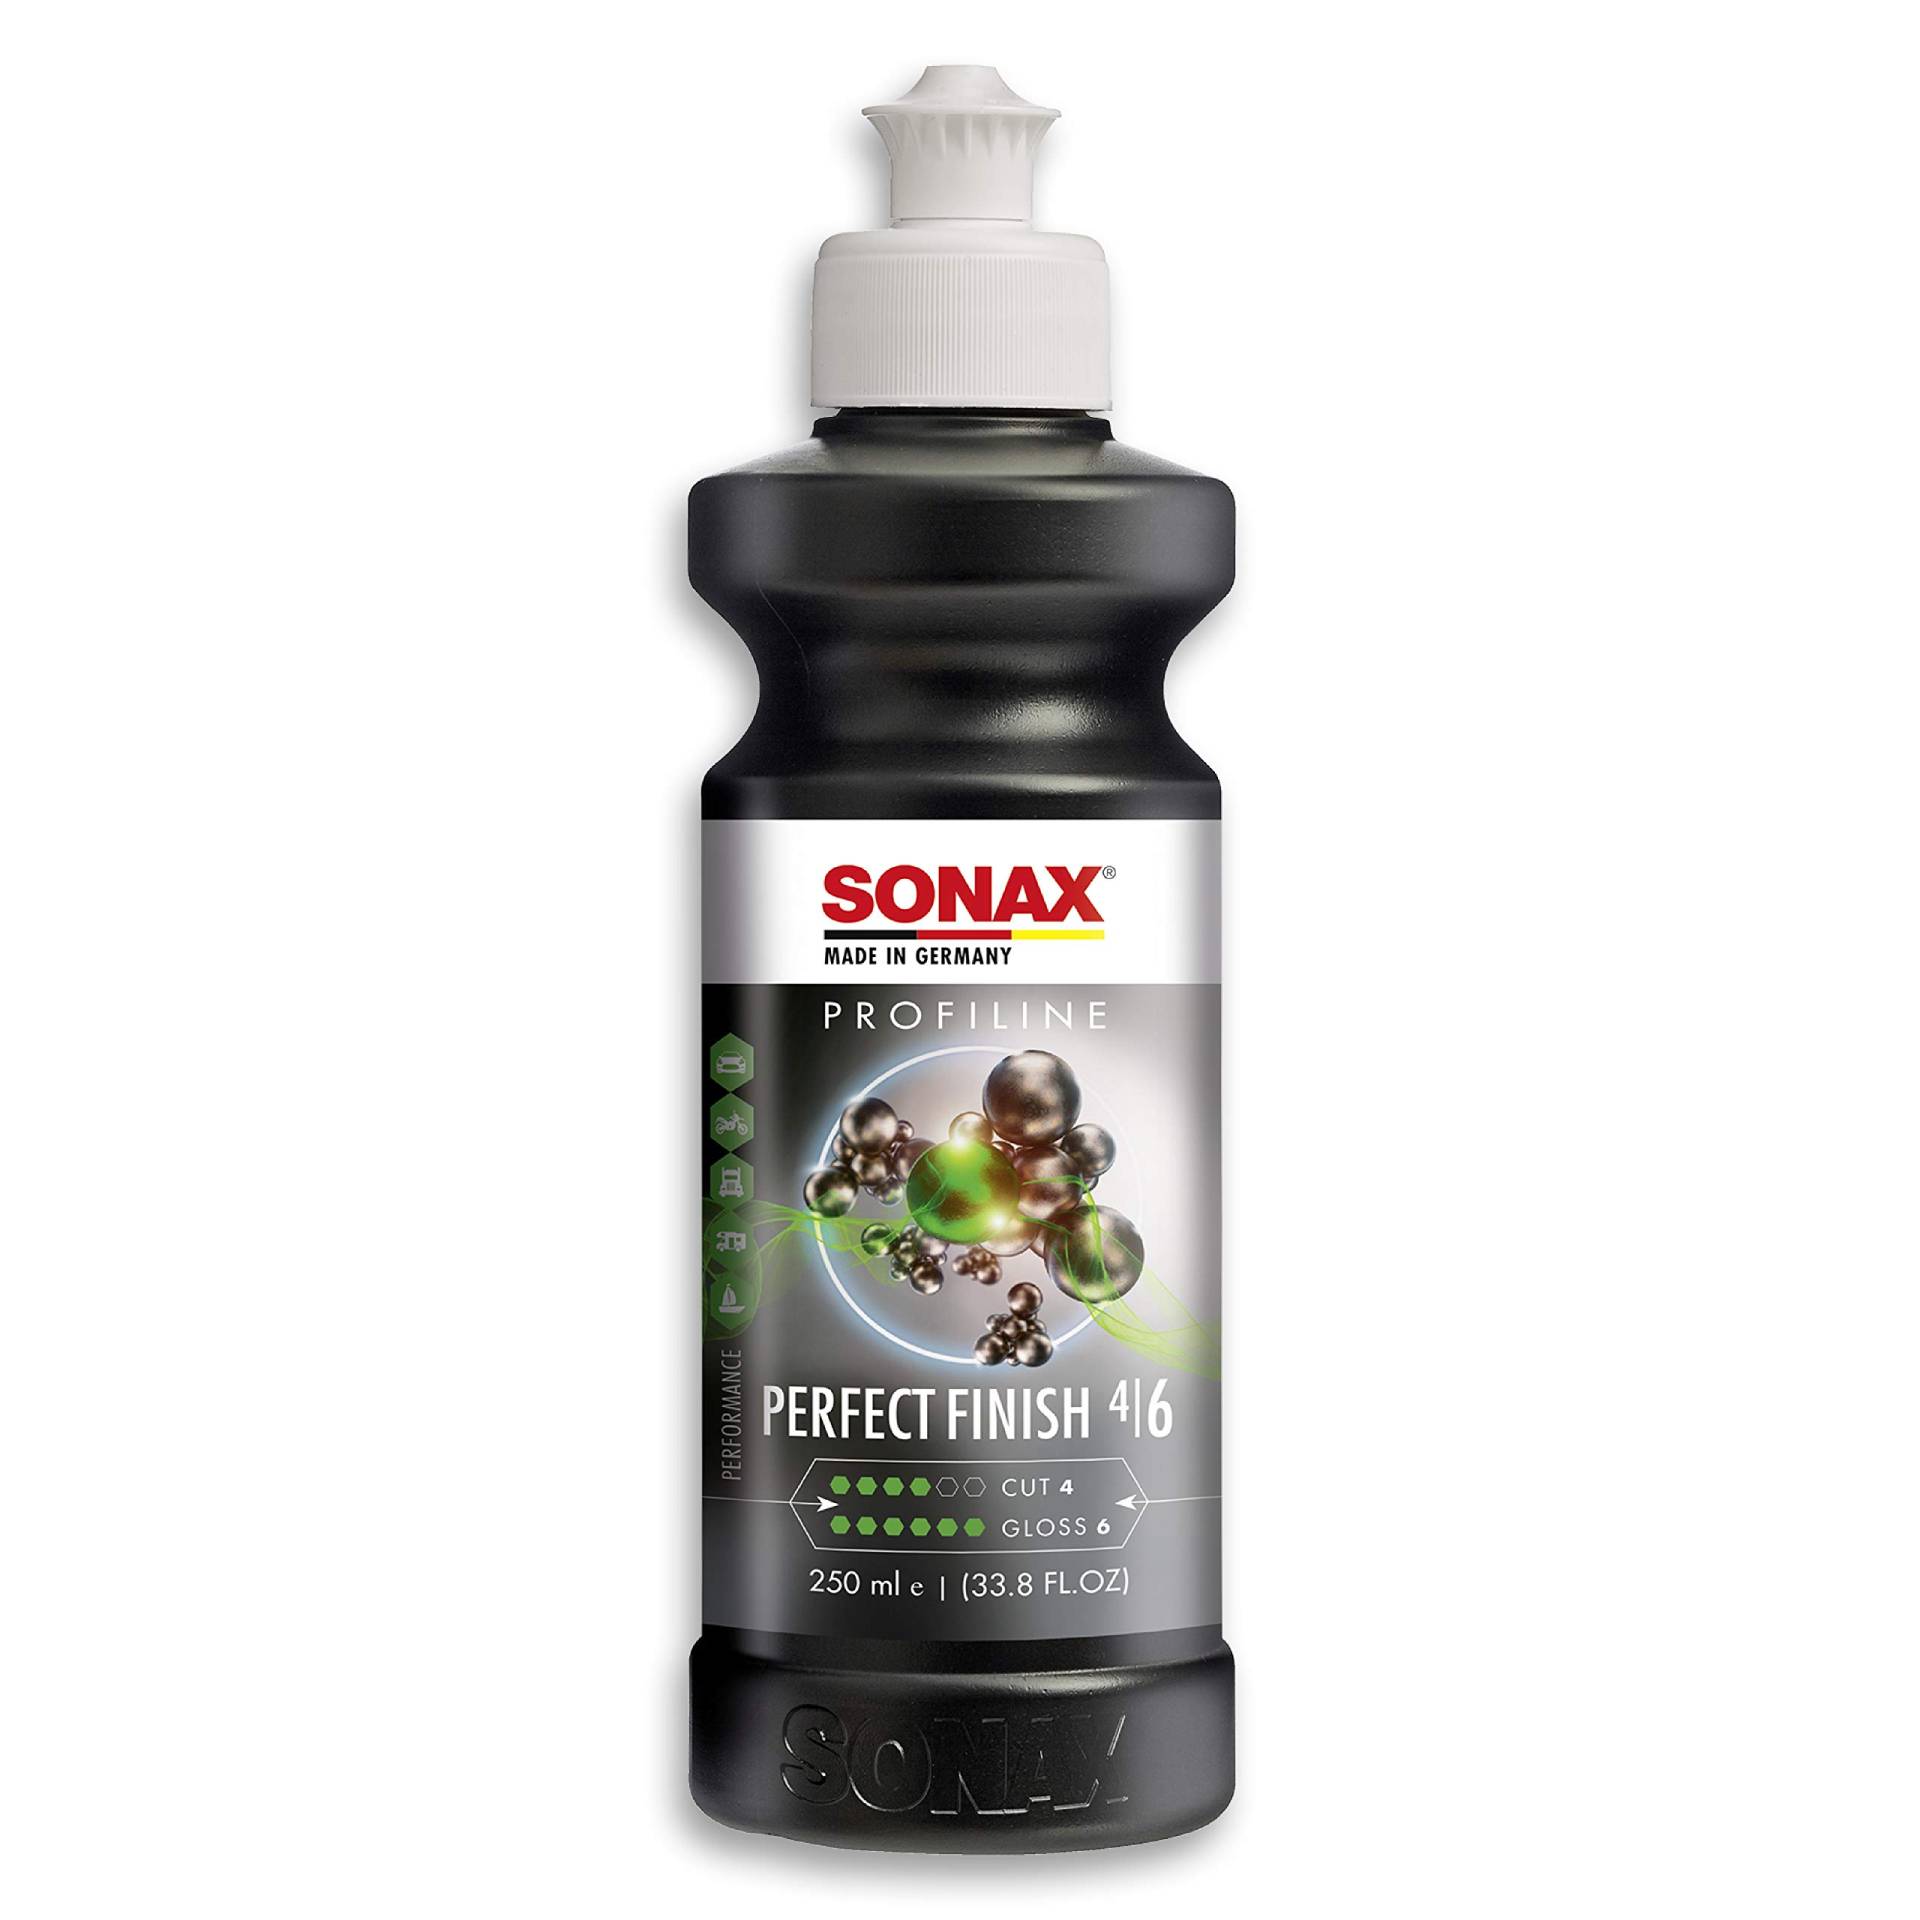 SONAX PROFILINE PerfectFinish (250 ml) Finishpolitur zum 1-stufigen Polieren von lokal ausgeschliffenen Lackschäden wie Staubeinschlüssen oder Läufern, Art-Nr. 02241410 von SONAX